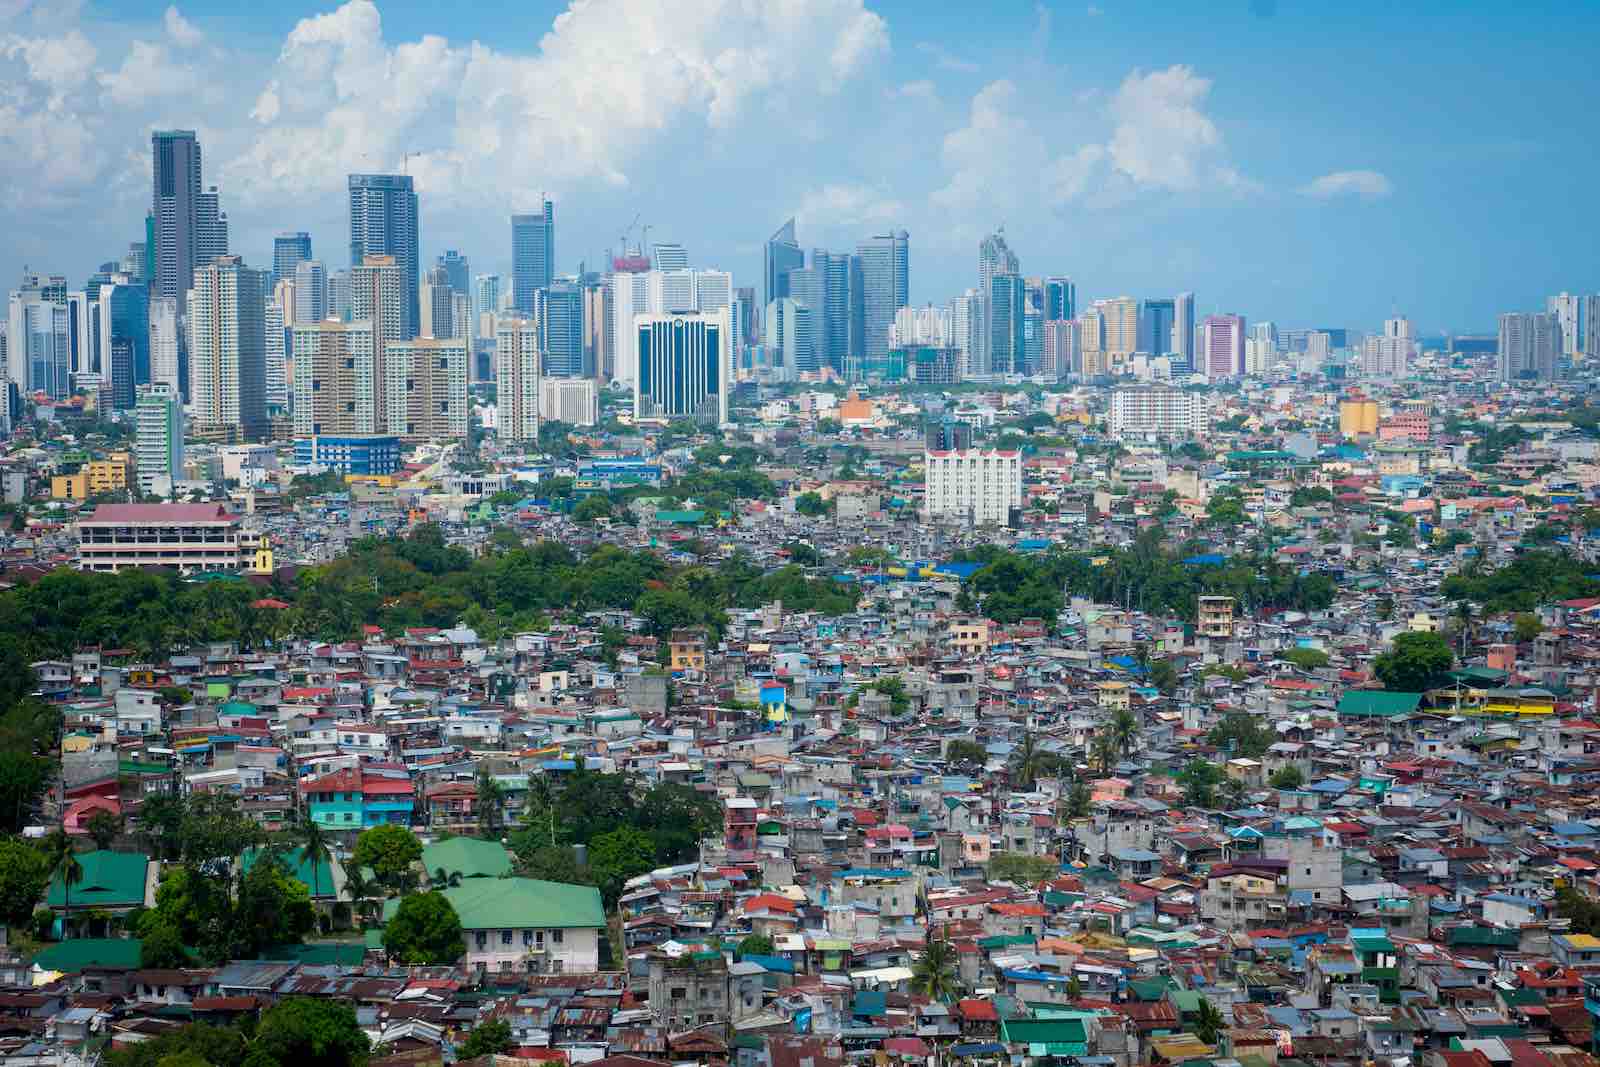 فیلیپین مکان پربازدید اینستاگرامی : فیلیپین، کشوری جزیره ای است که در اقیانوس آرام غربی واقع شده است. این کشور به خاطر داشتن 7000 جزیره ی استوایی خود، یکی از طولانی ترین خطوط ساحلی دنیا را به خود اختصاص داده است.